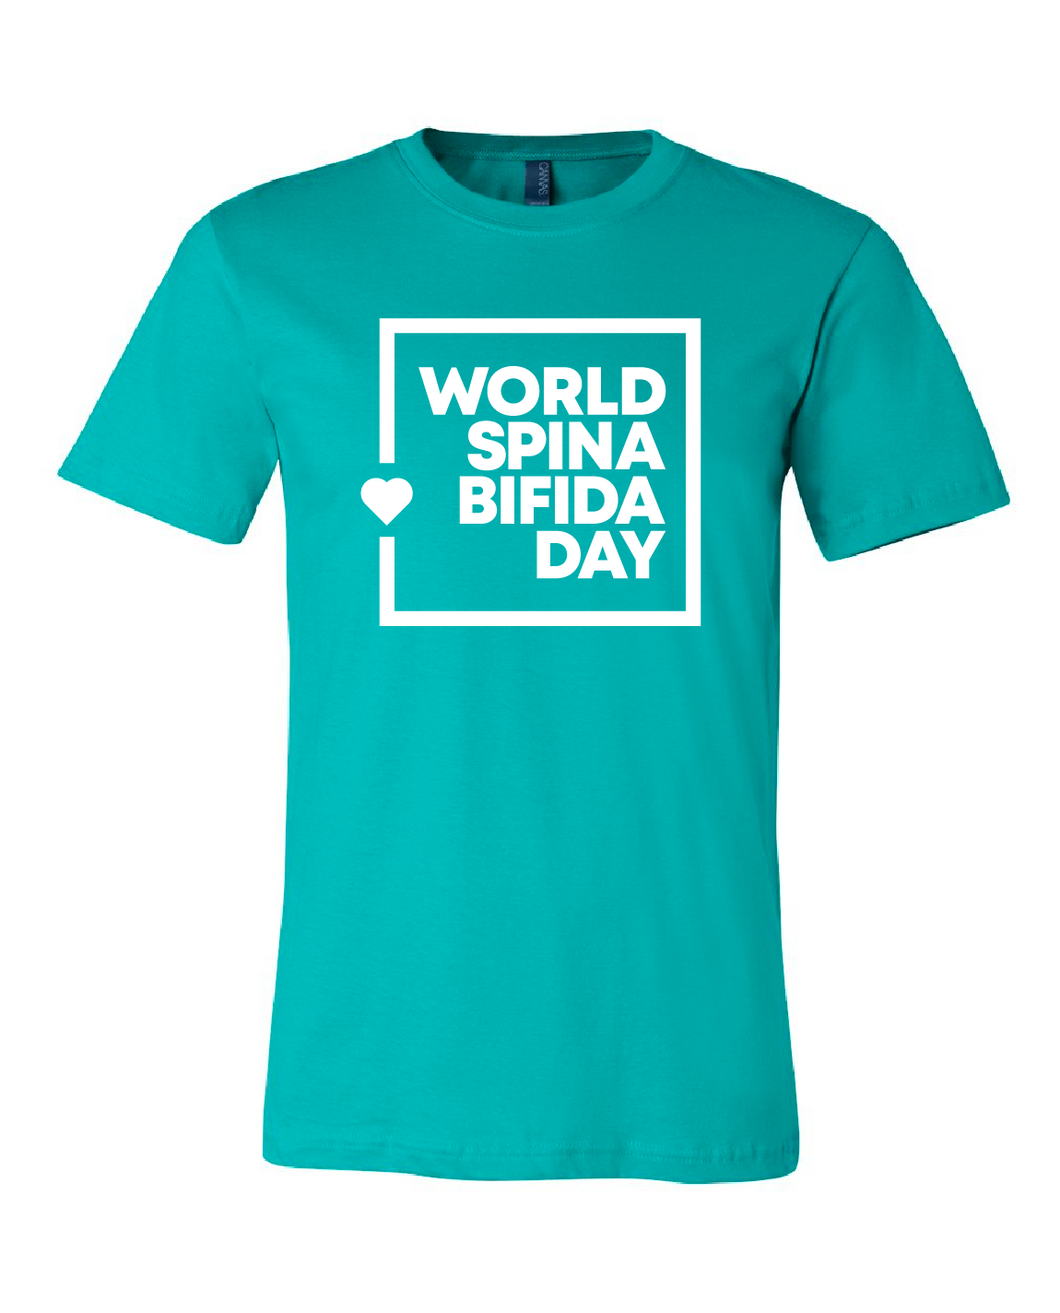 World Spina Bifida Day Teal T-Shirt - YOUTH